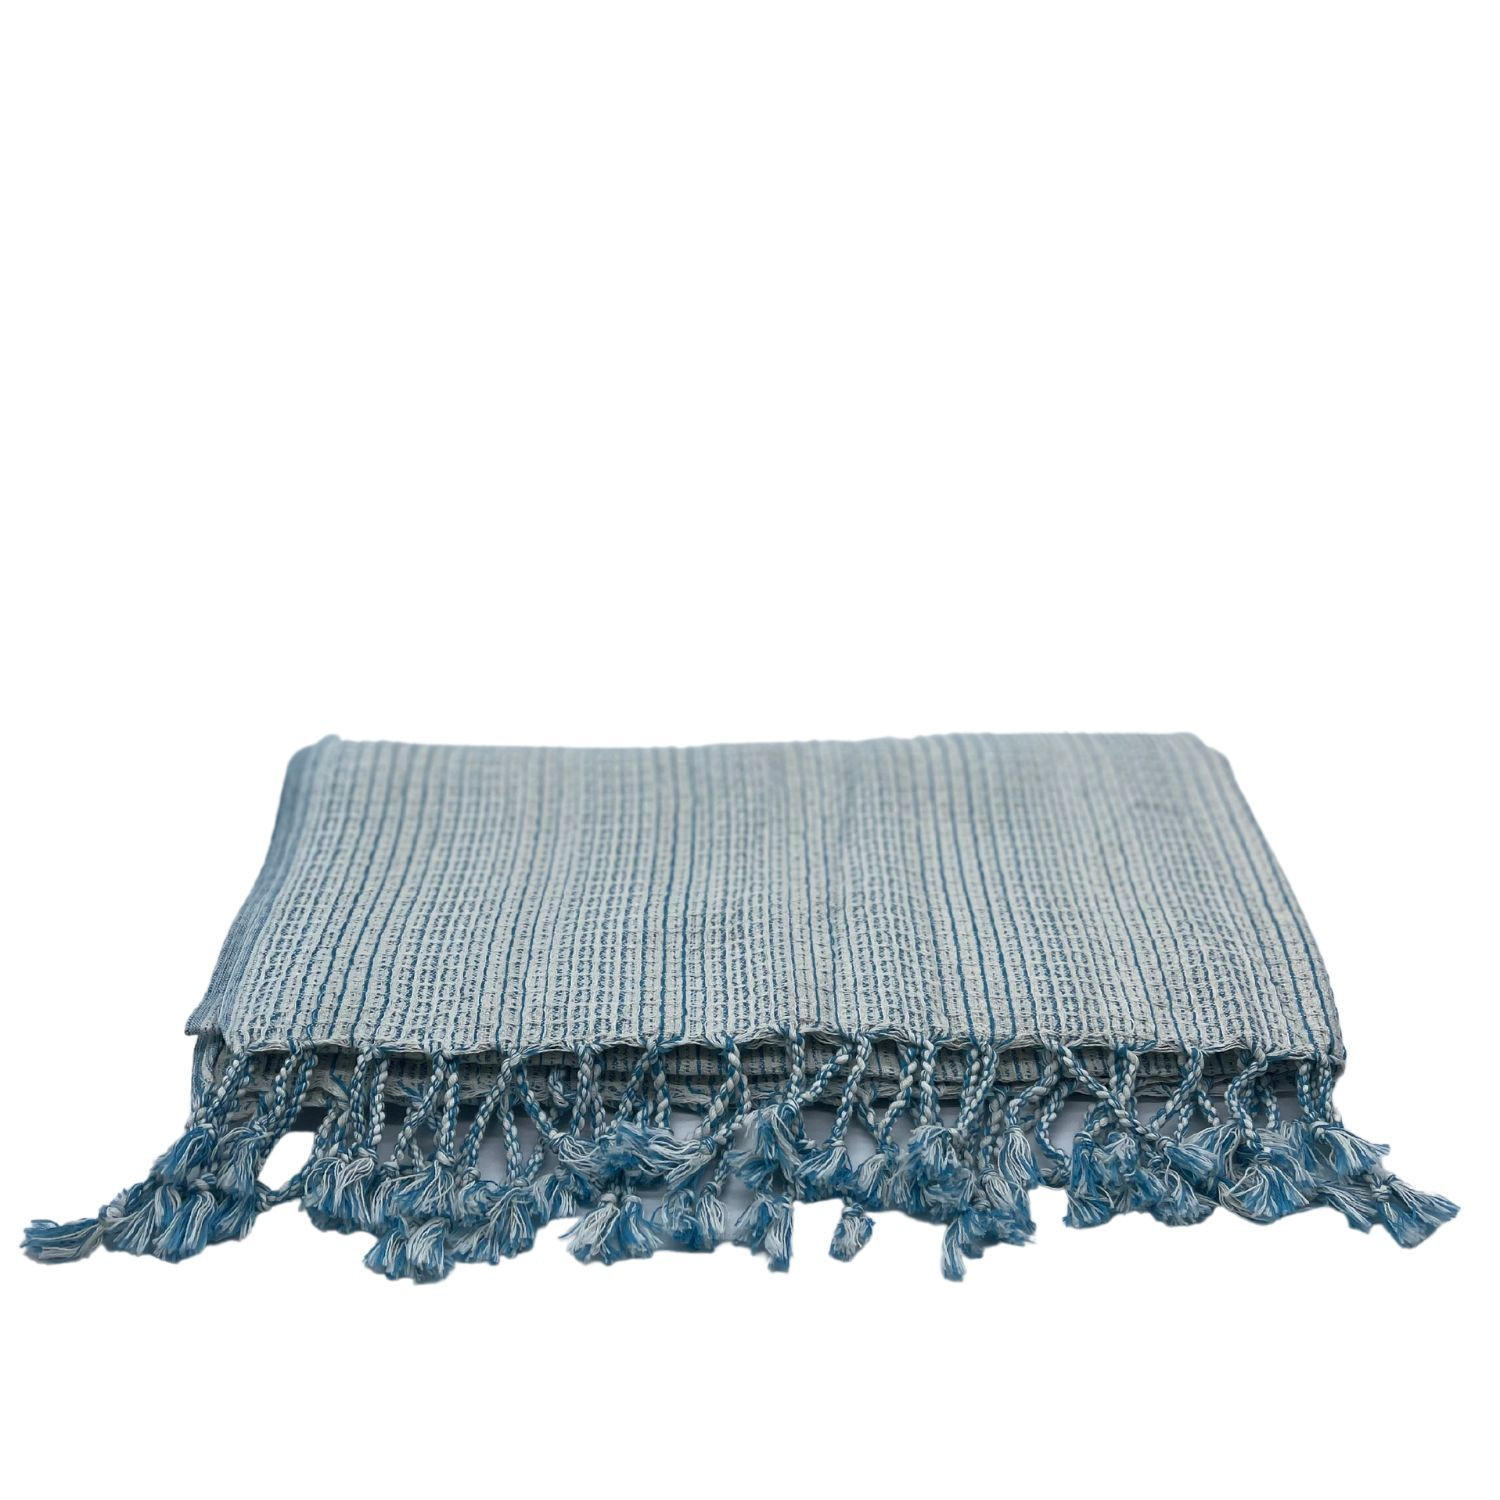 STRANDTUCH Plaid 85/170 cm  - Hellblau, KONVENTIONELL, Textil (85/170cm) - Esposa